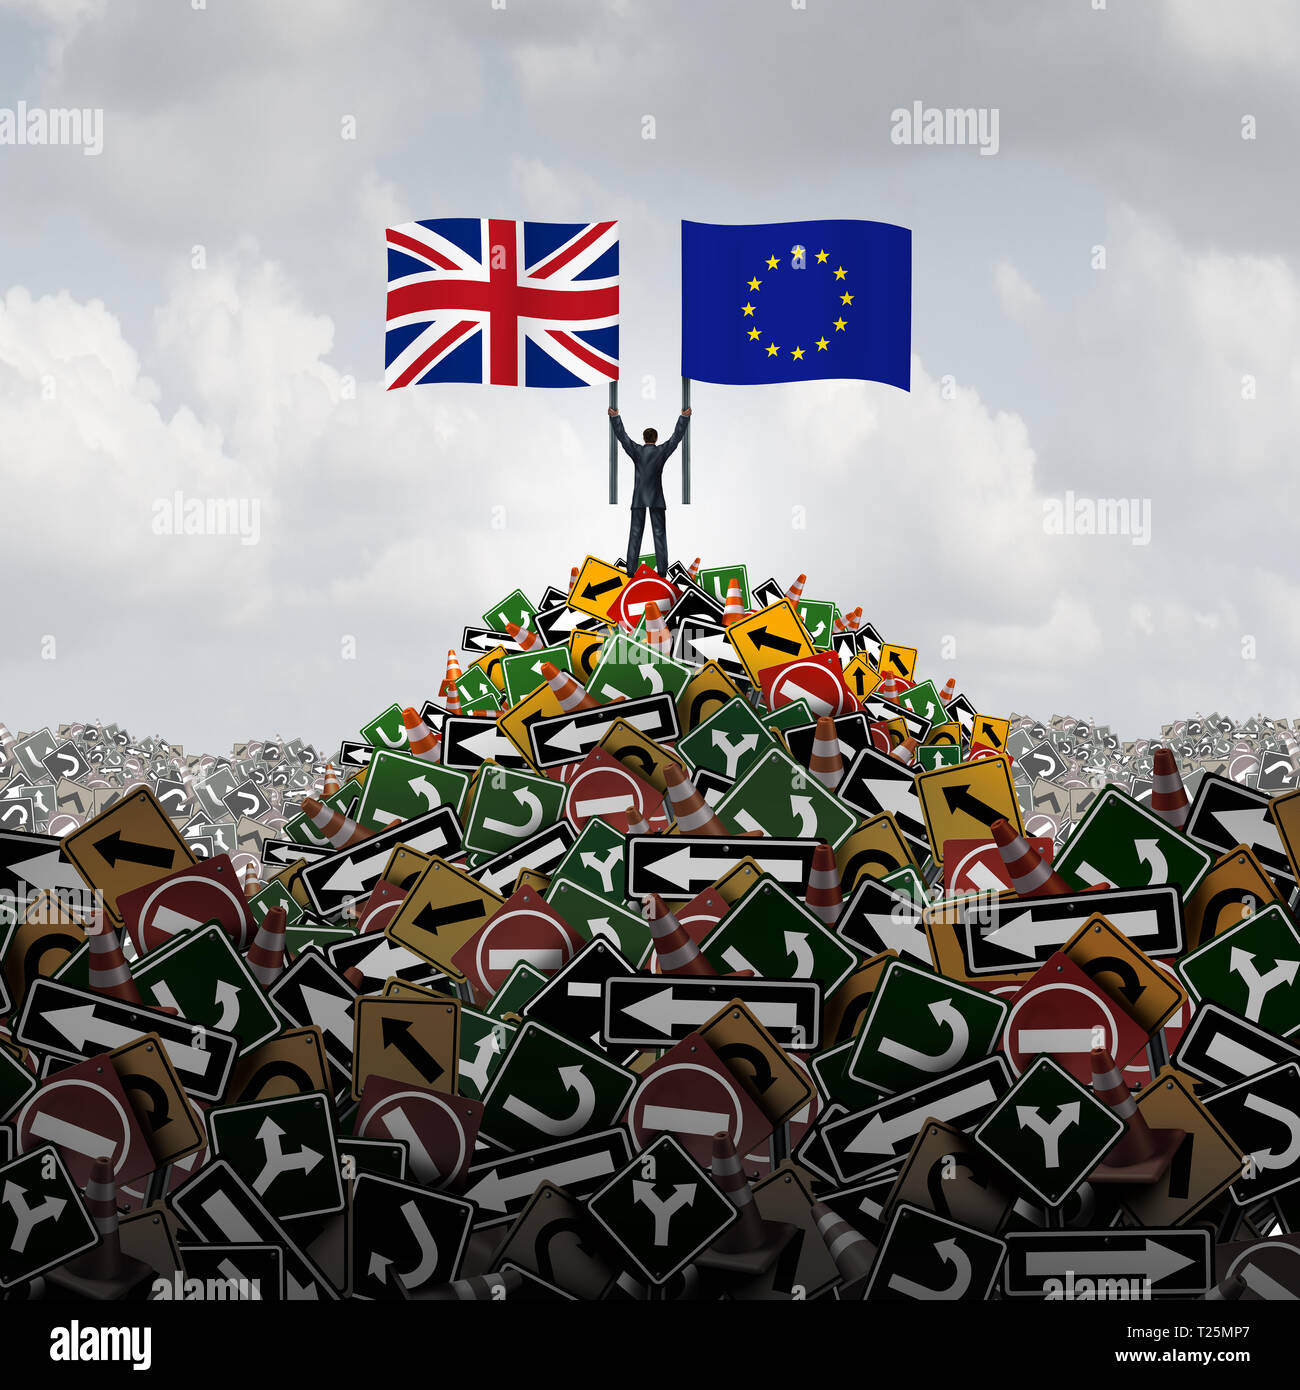 De Entscheidung der Europäischen Union oder Großbritannien in Europa politische Verwirrung als brexit Konzept für eine neue Großbritannien Abstimmung und die britische Regierung Krise. Stockfoto